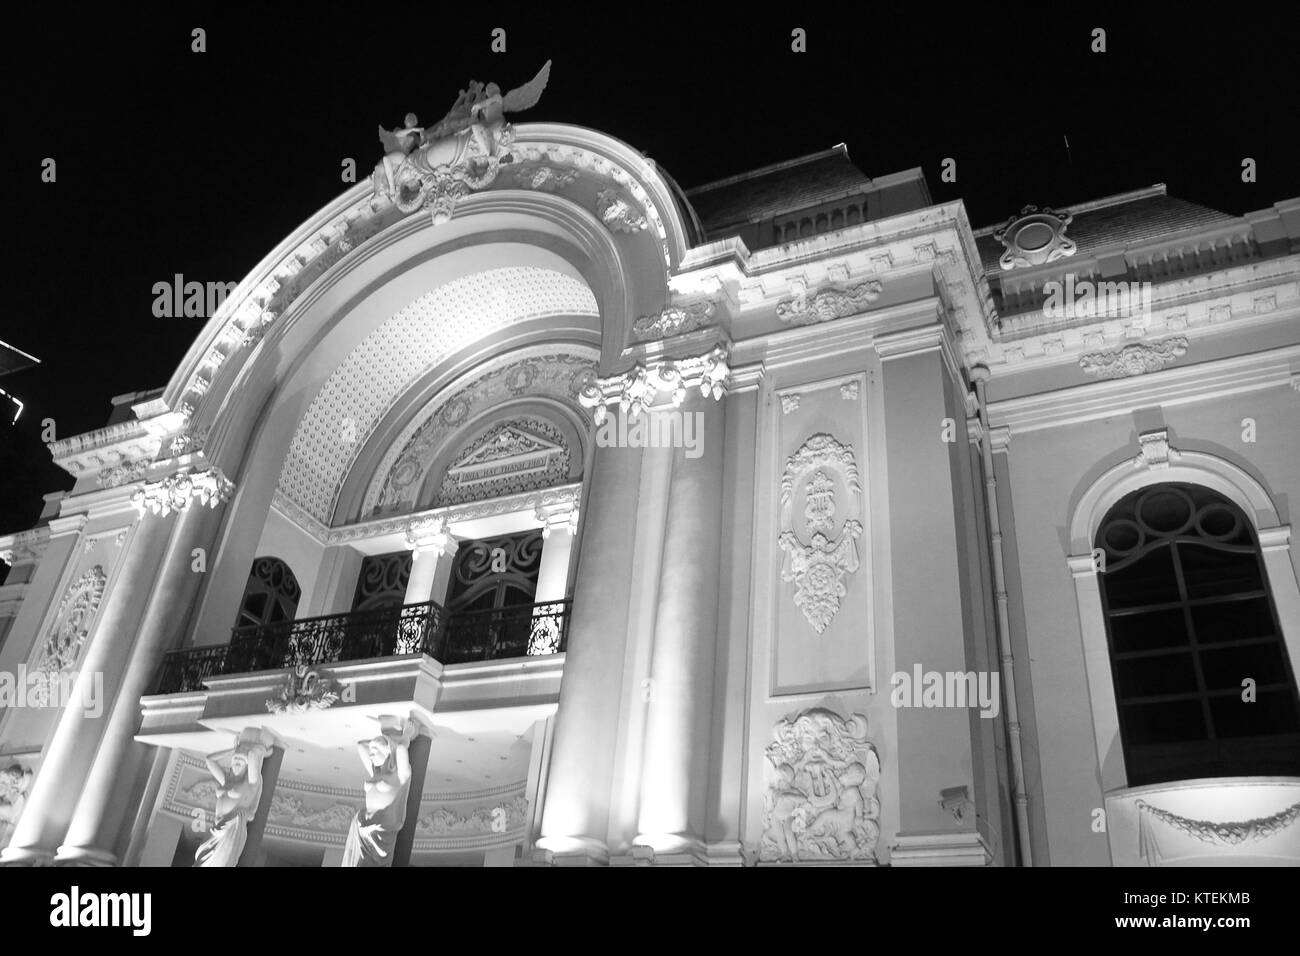 Opera House in HCMC/Ho Chi Minh City at Night Stock Photo